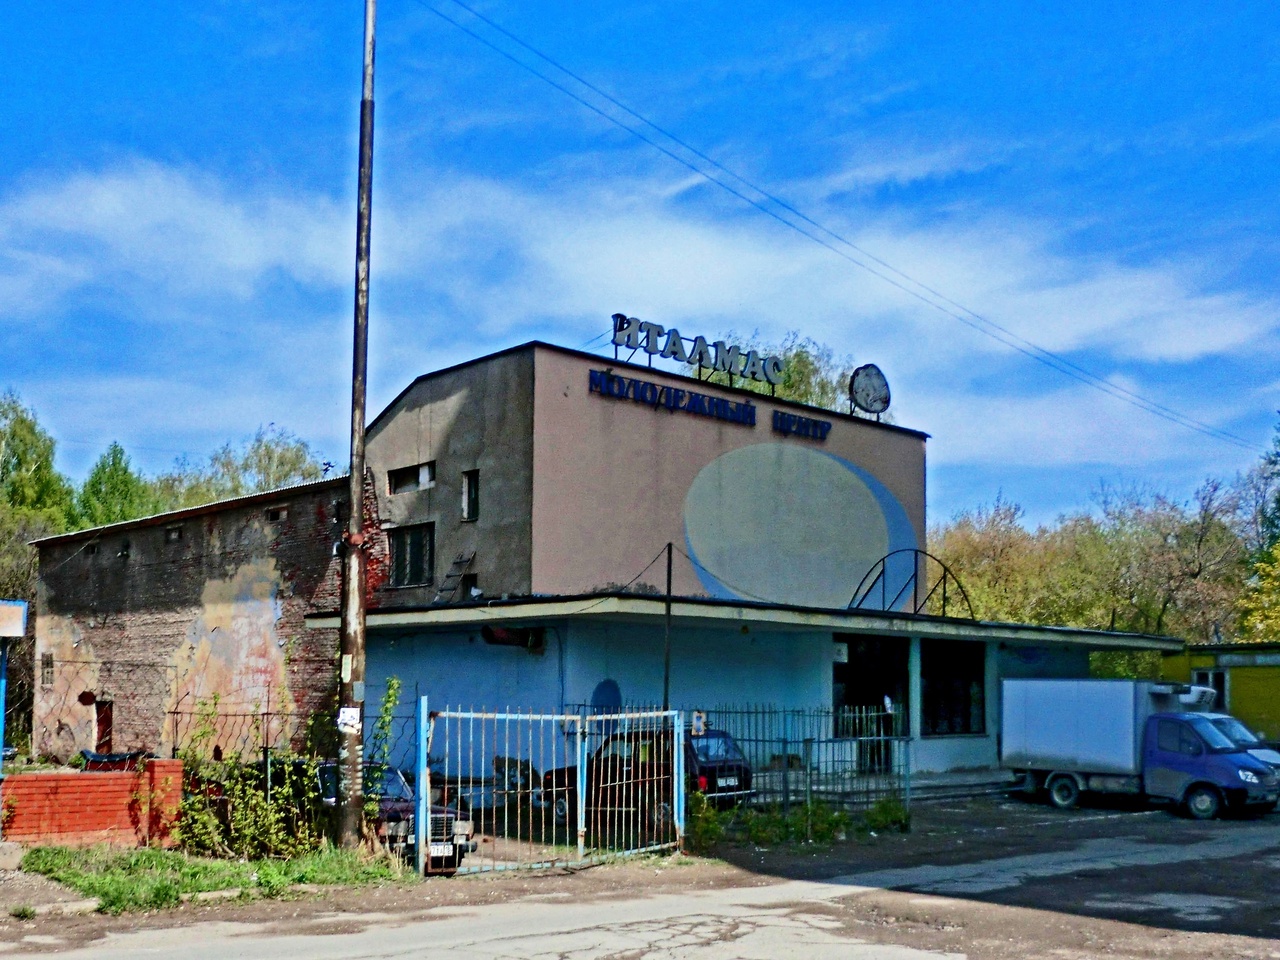 Бывший кинотеатр "Италмас" , фото сделано 7 мая 2012 года. Ижевск.